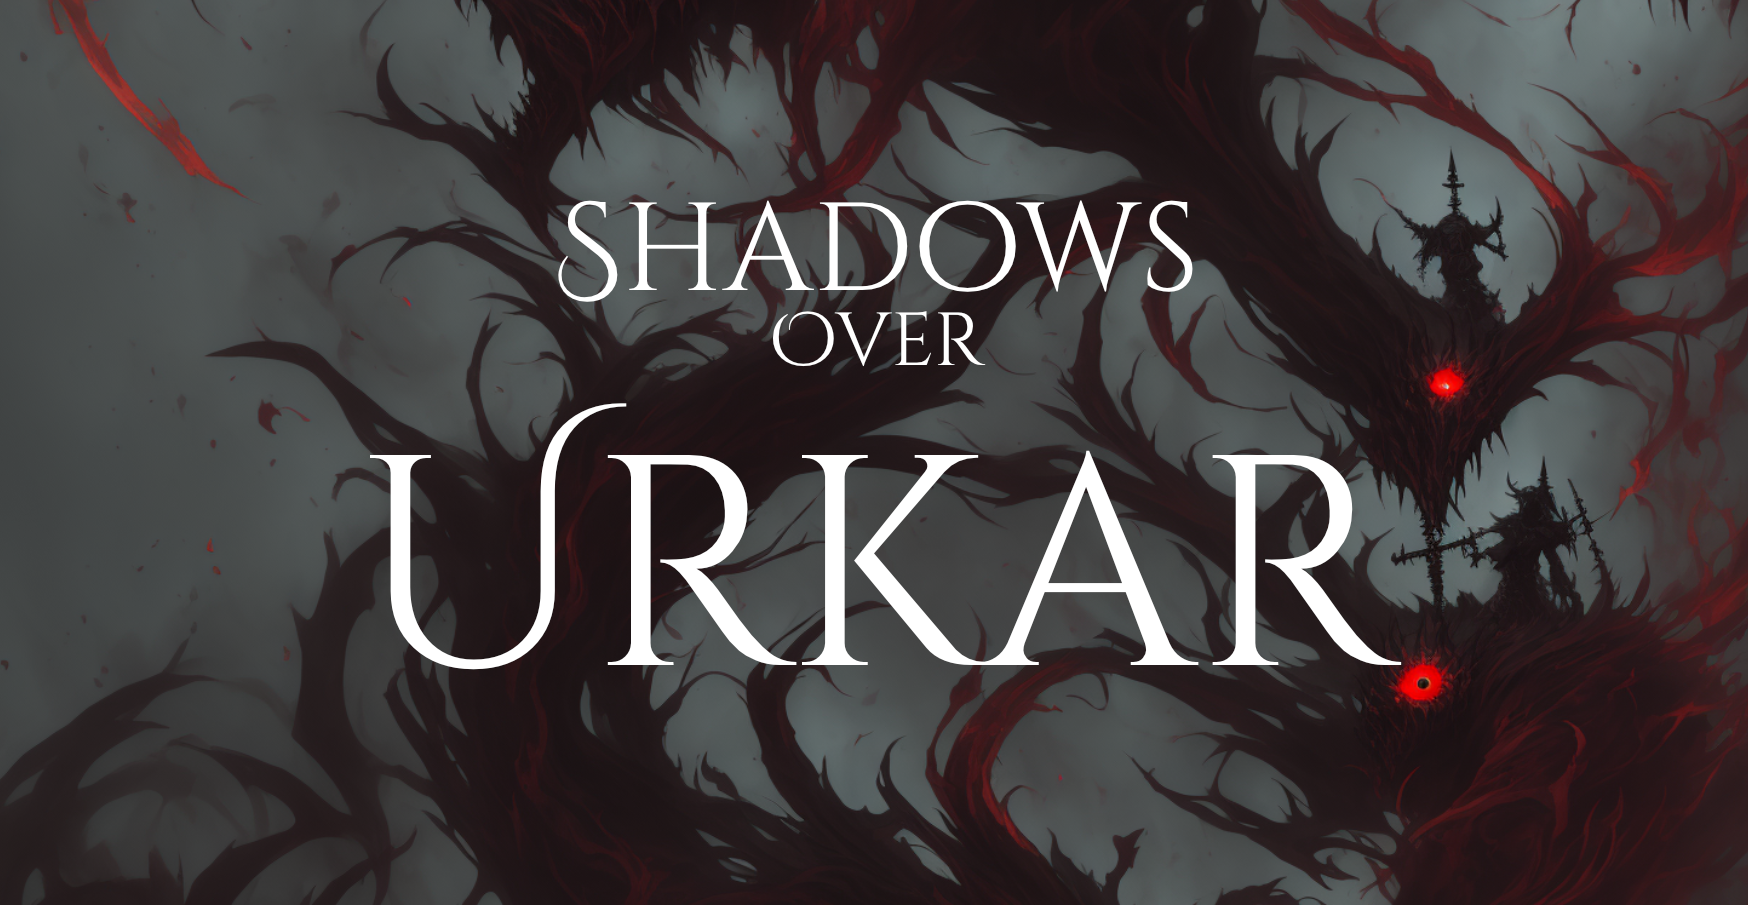 Shadows Over Urkar